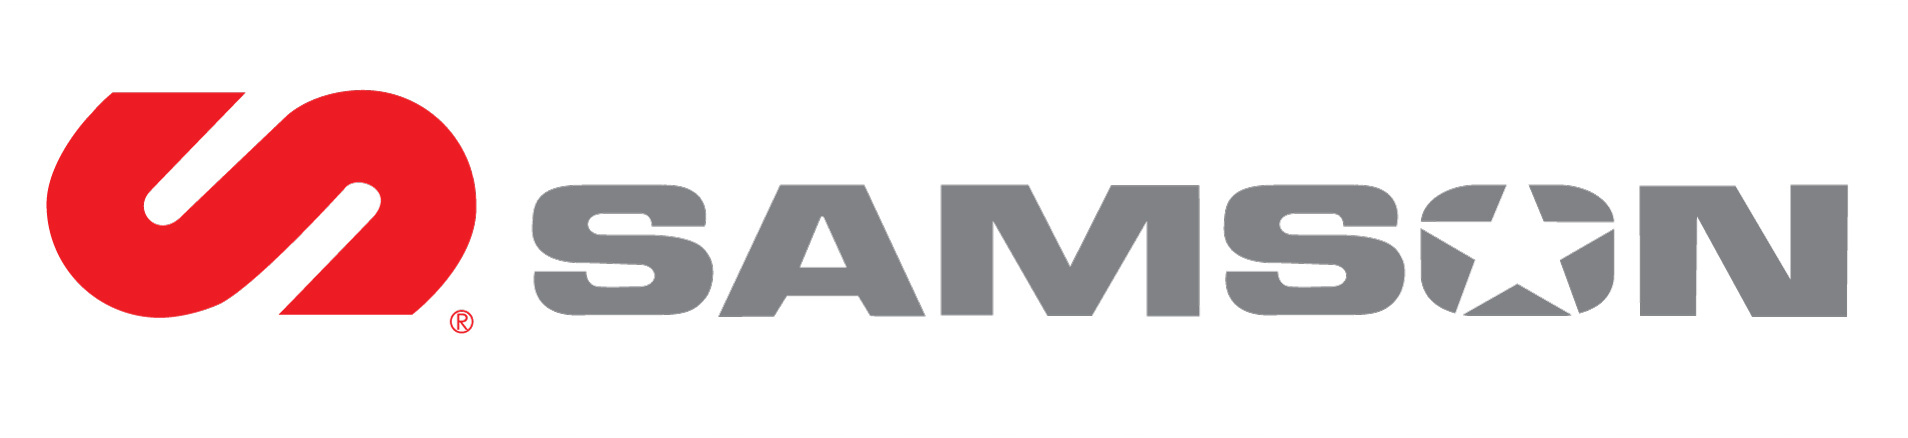 SAMSON logo